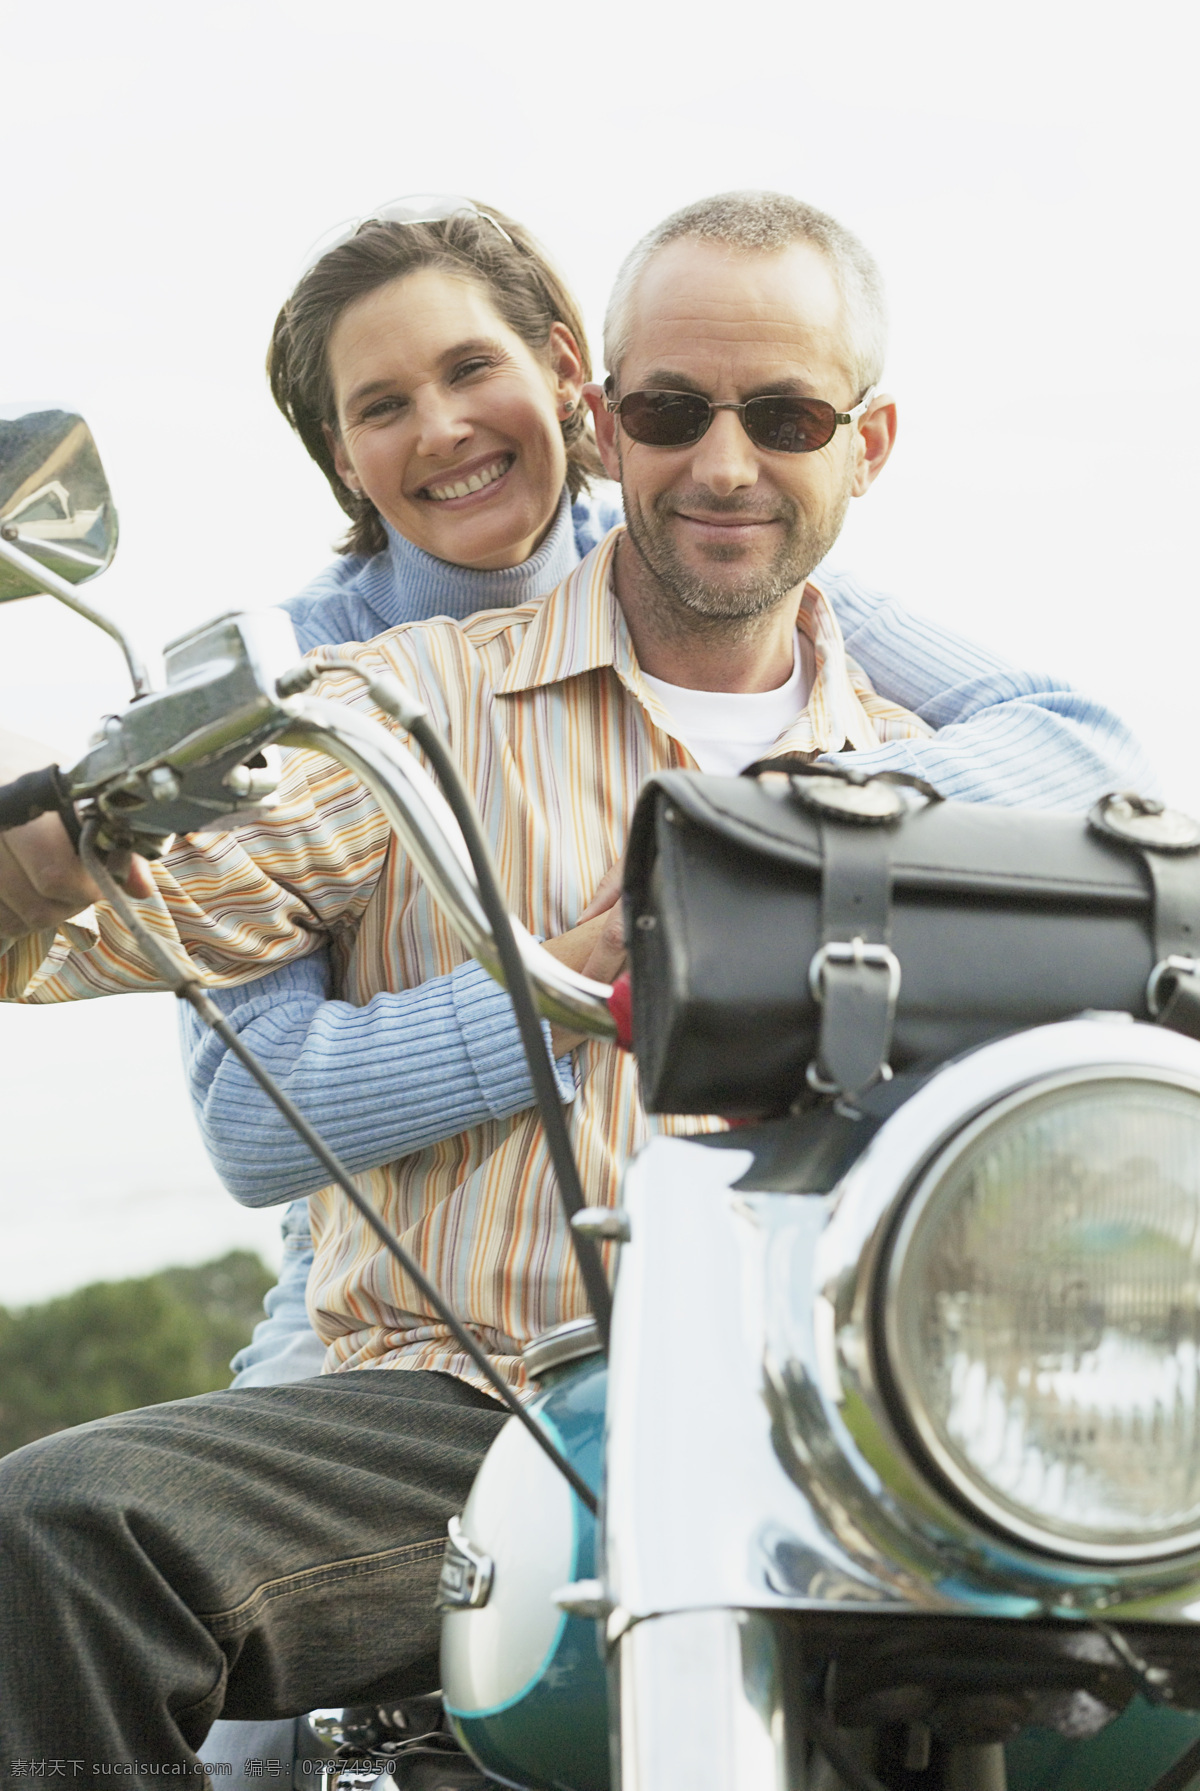 摩托 车上 情侣 外国情侣 亲密 爱人 摩托车 行驶 微笑 生活人物 人物图片